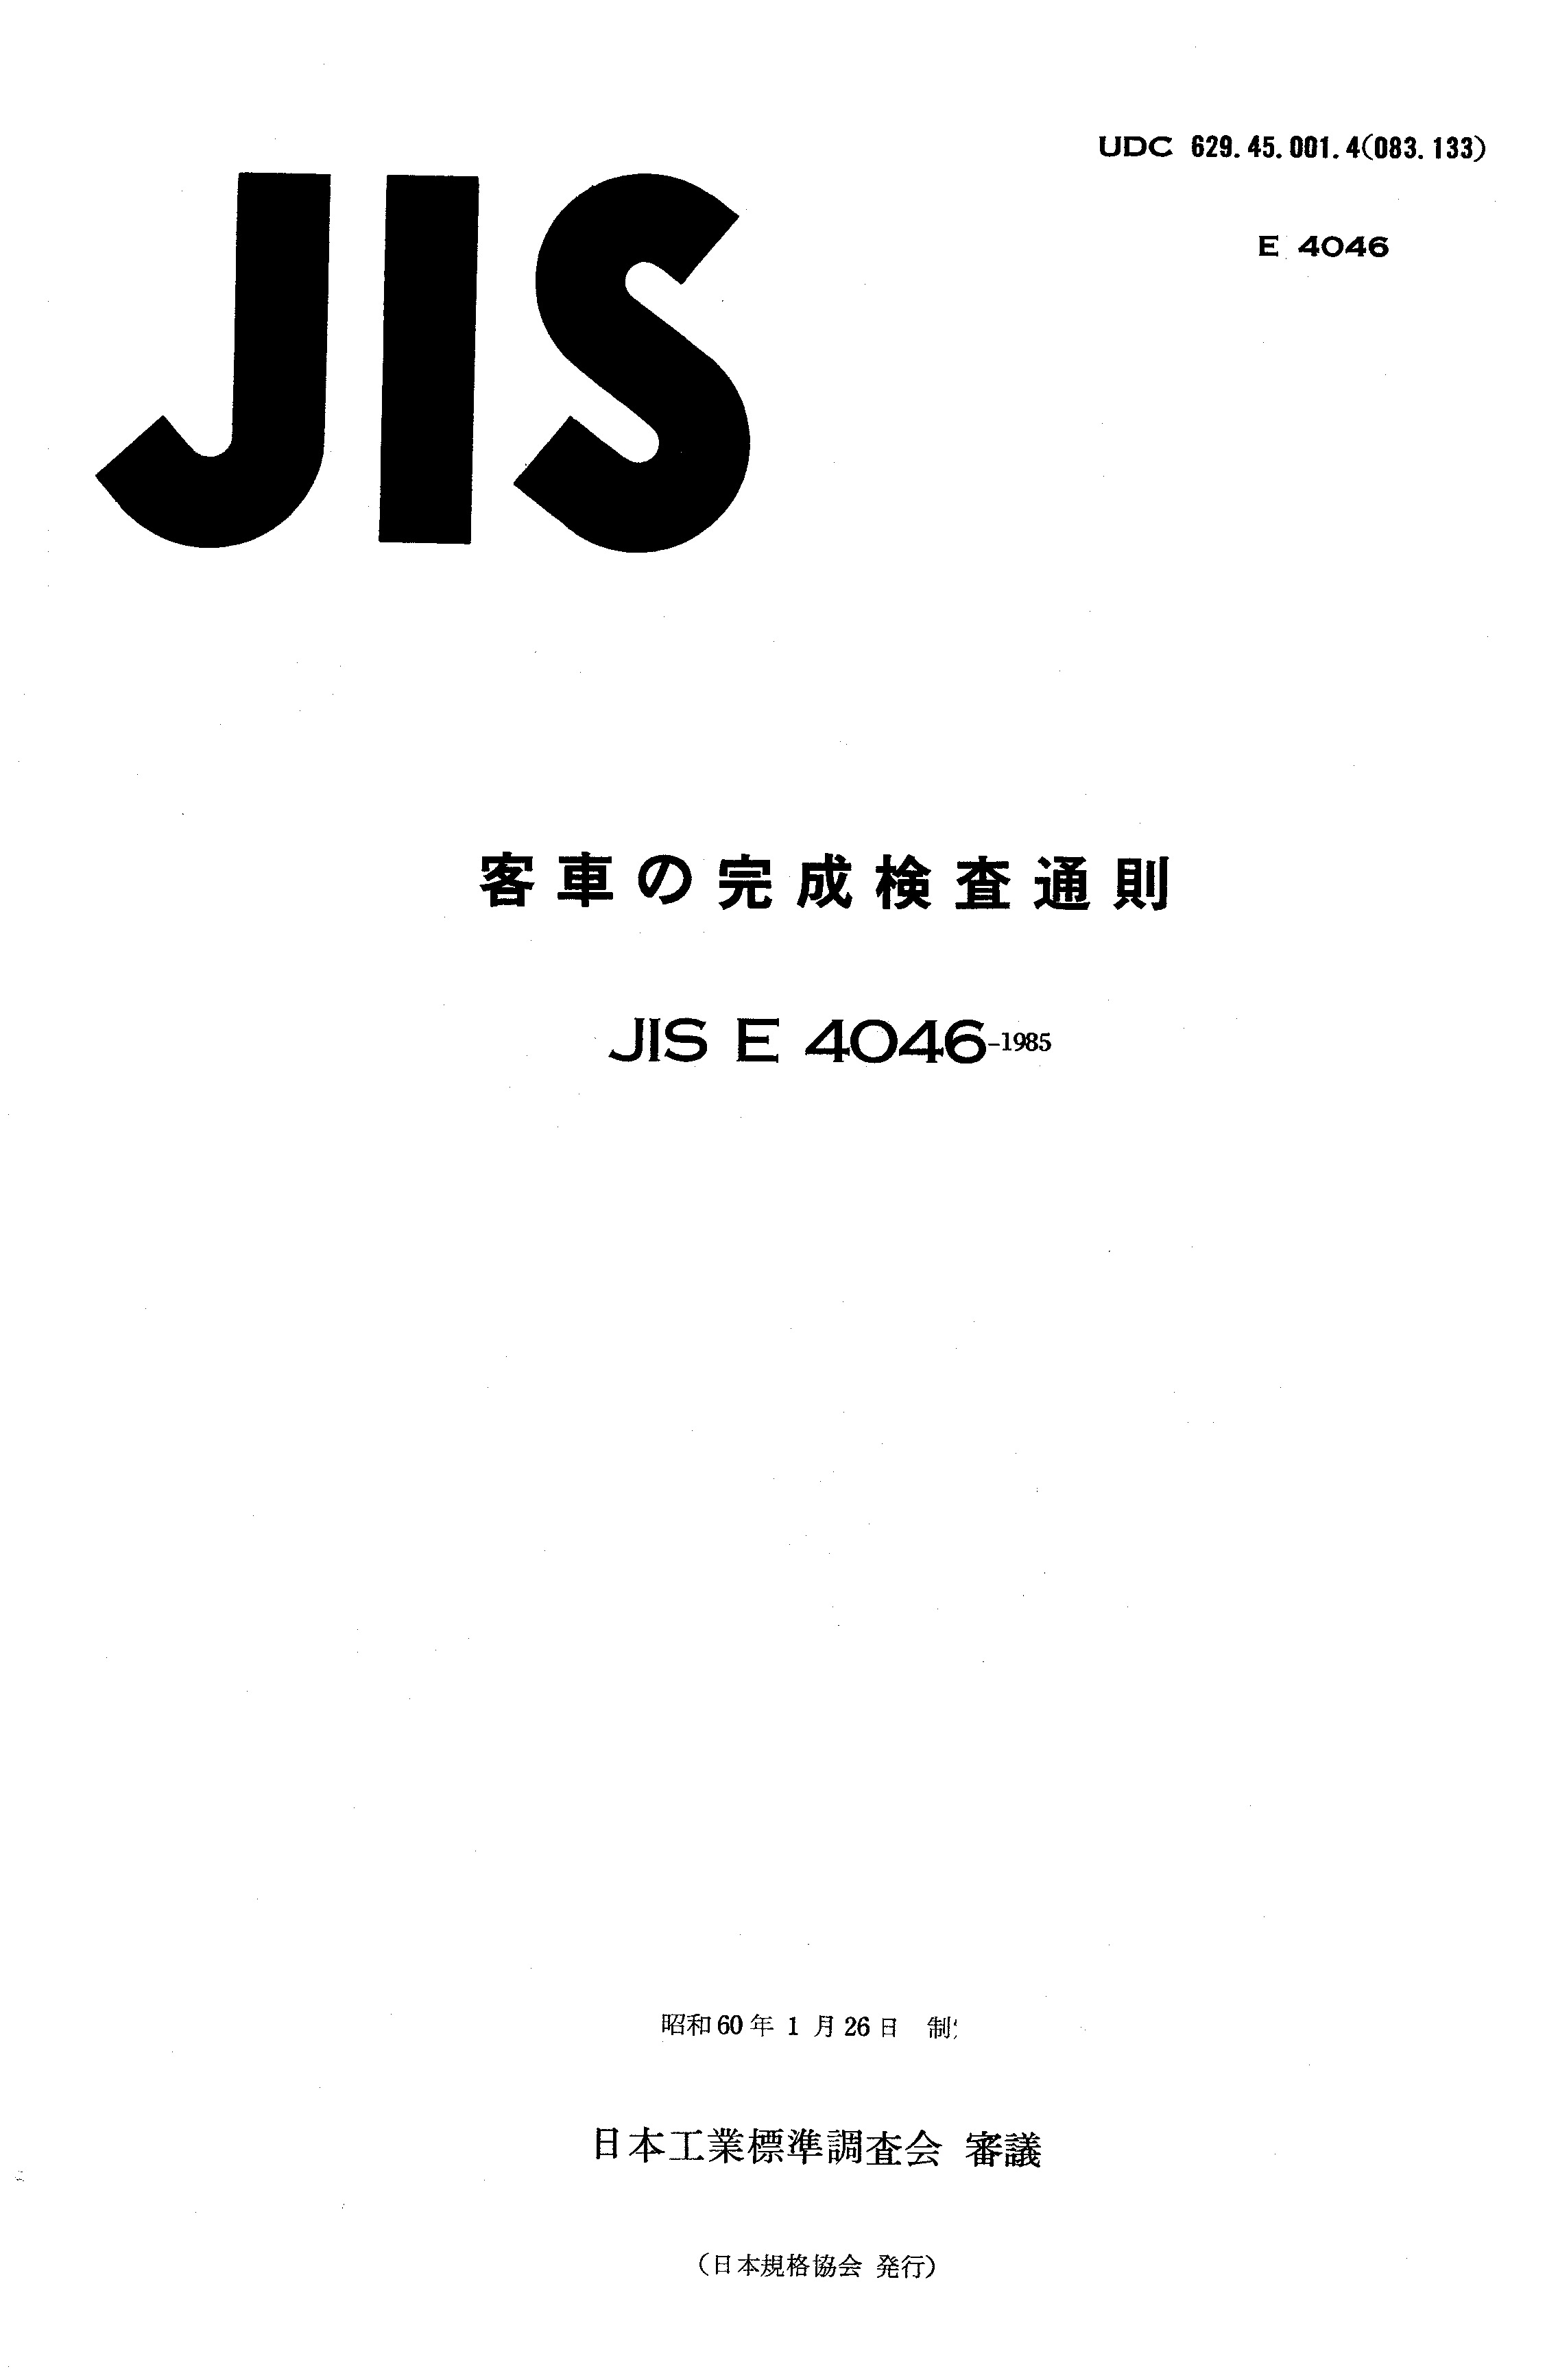 JIS E 4046:1985封面图